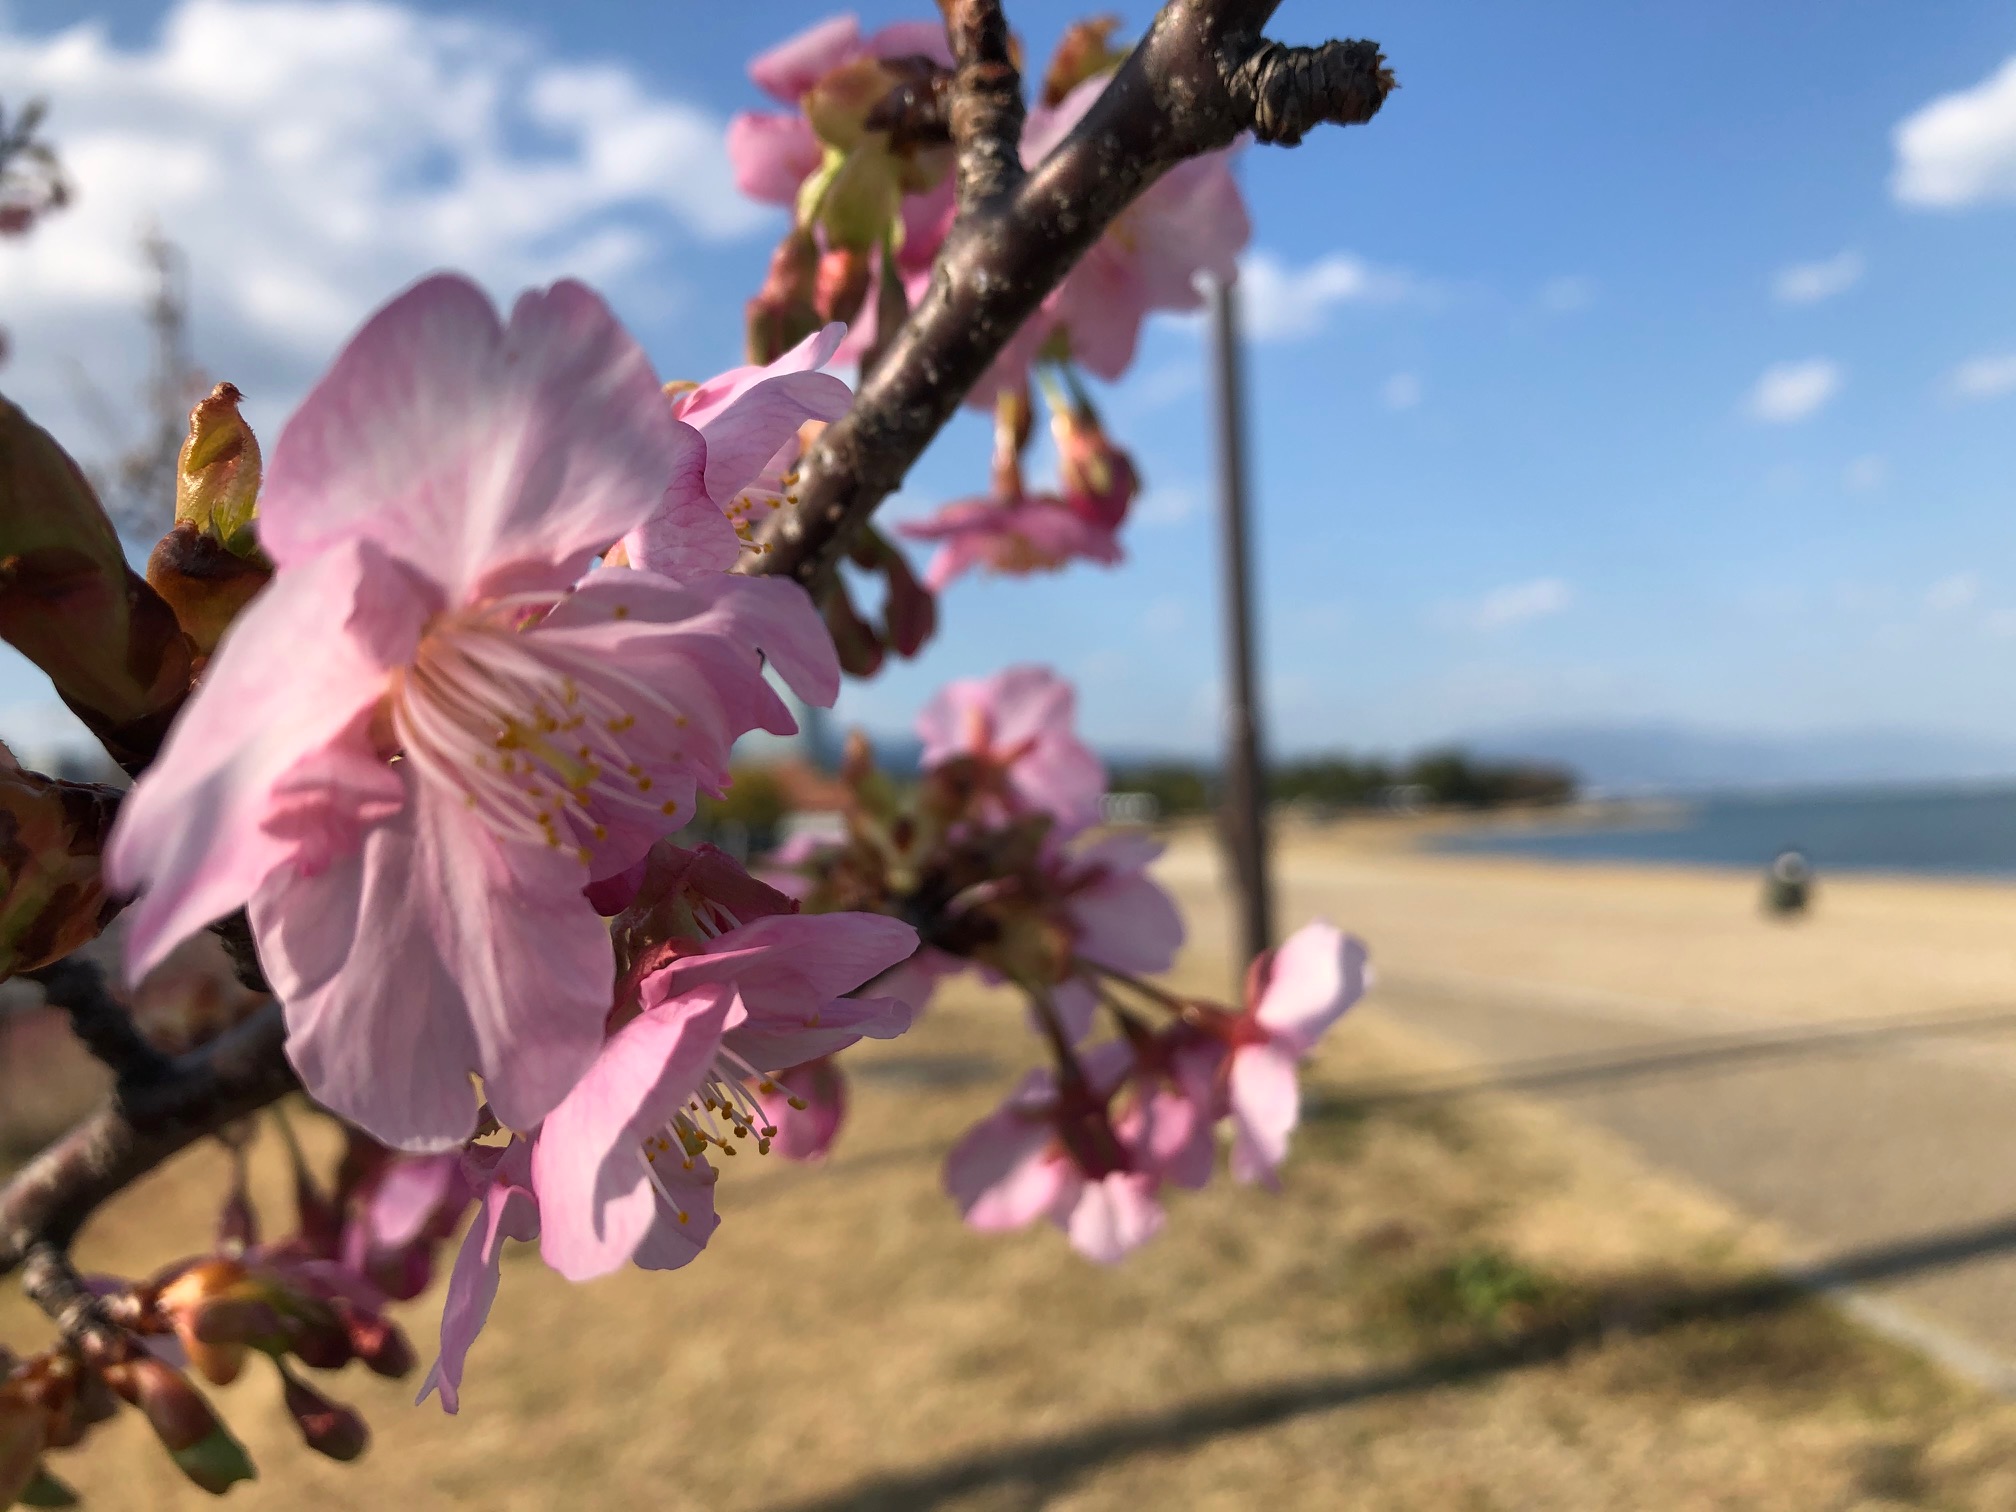 琵琶湖岸の早咲き桜がもうすぐ見頃‼【大津湖岸なぎさ公園 遊歩道沿】近くには芝生・ベンチや思いっきり遊べそうな砂浜も★